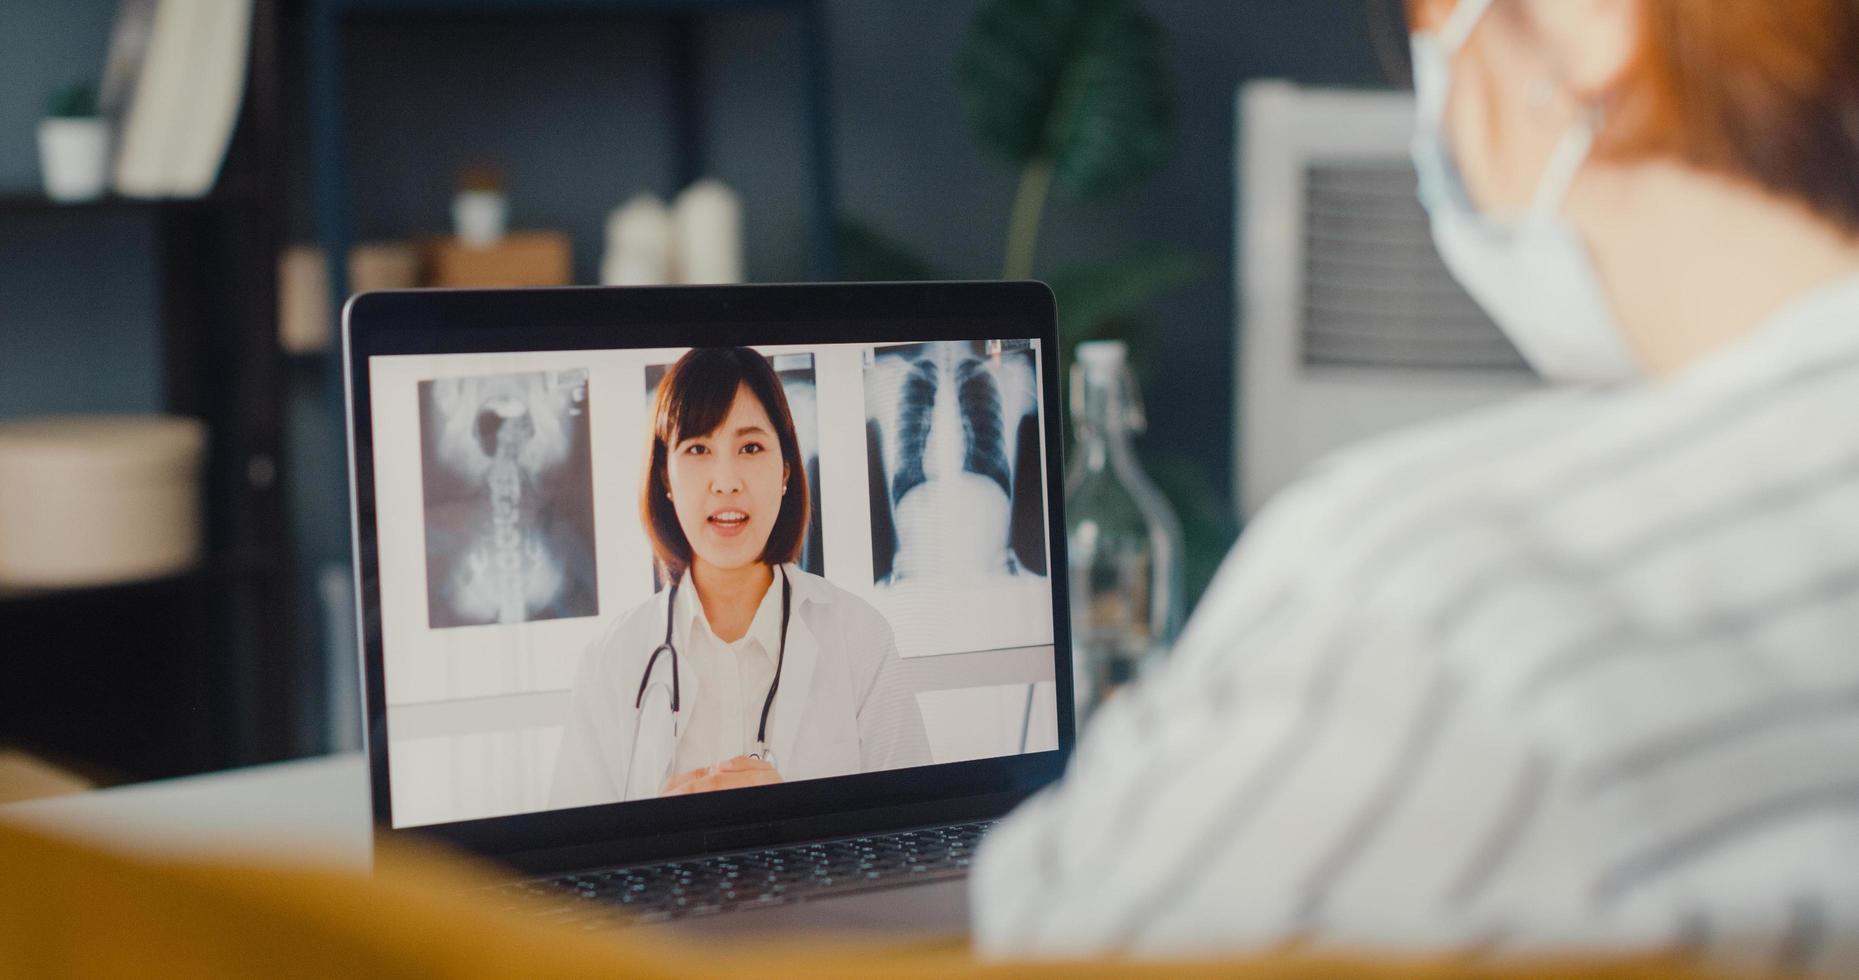 Una joven asiática usa una mascarilla protectora usando una computadora portátil, habla sobre la enfermedad en una videollamada con un médico senior, consulta en línea en la sala de estar de la casa foto